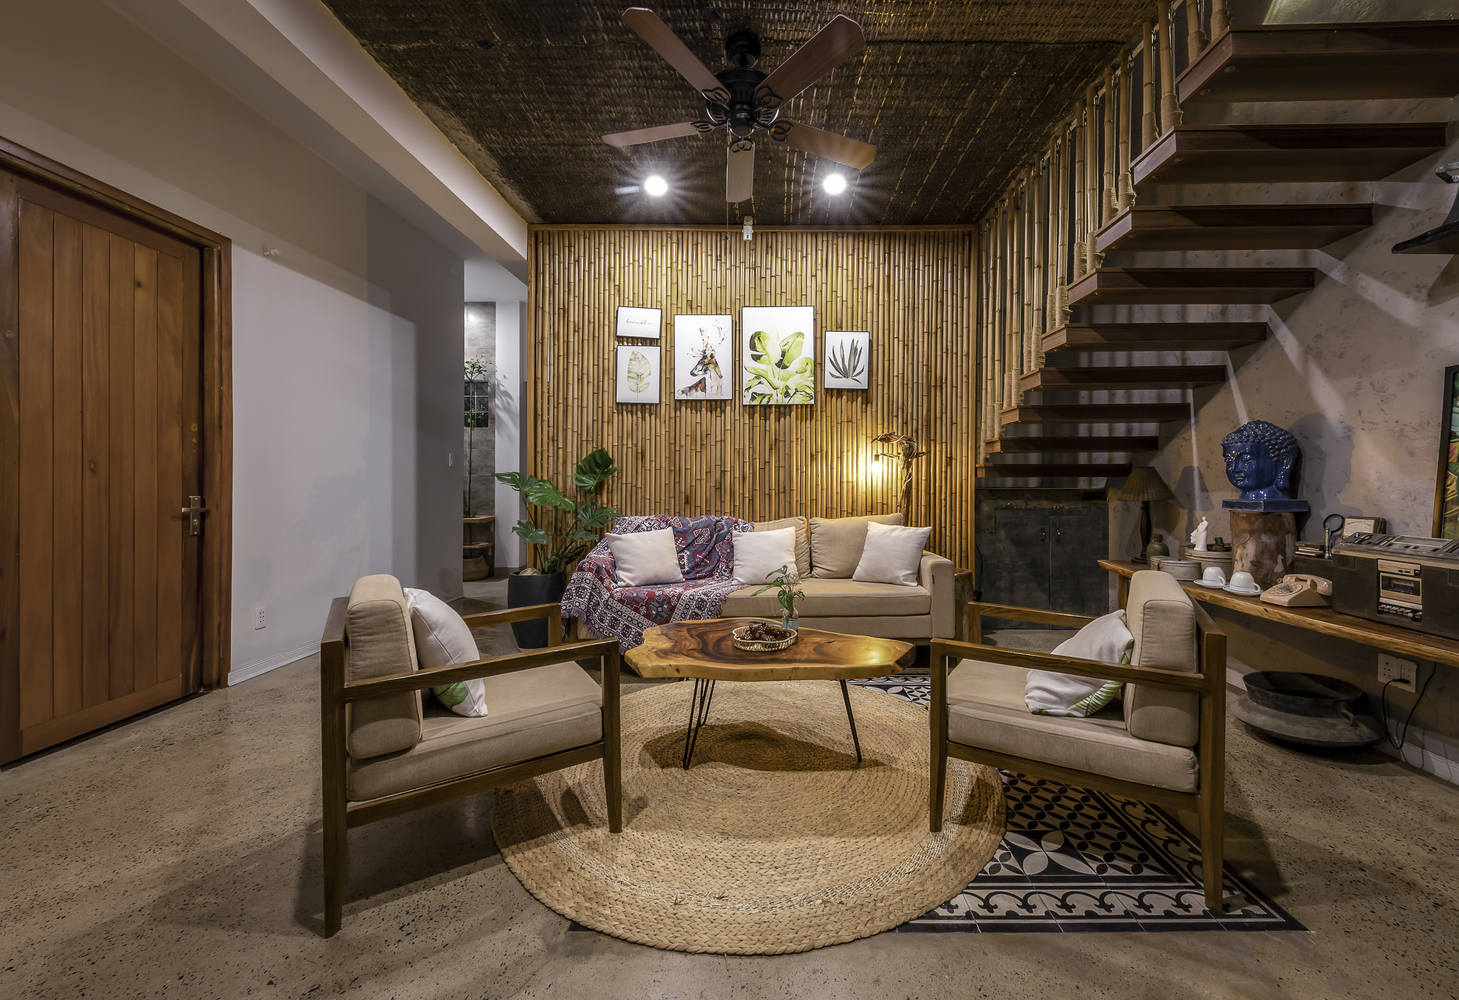 Không gian phòng khách khá rộng rãi, sử dụng nội thất làm bằng chất liệu tự nhiên như bàn ghế gỗ, thảm cói, tre ốp tường.